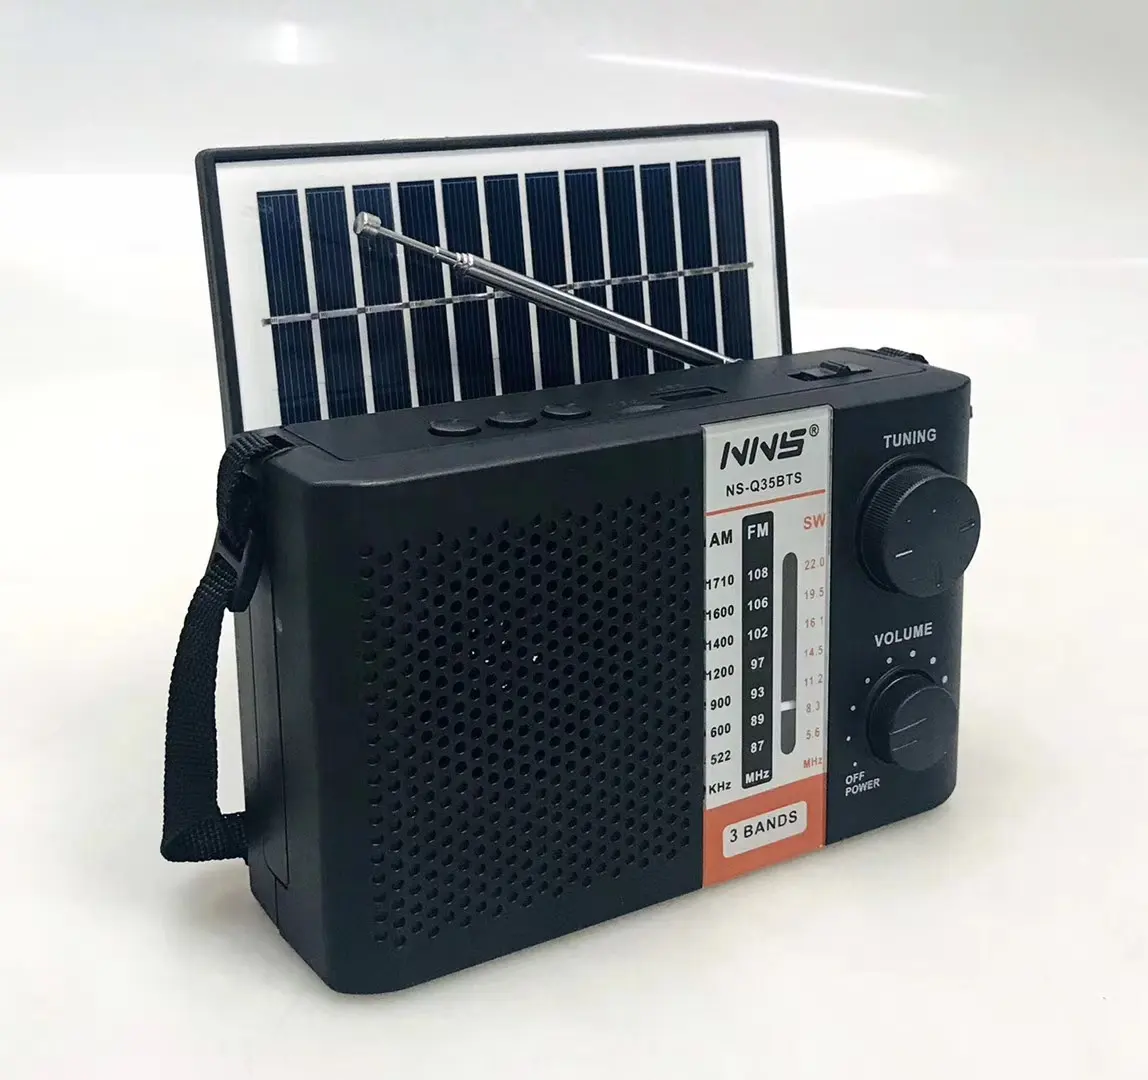 NNS Q35BTS yeni Trend Usb çalar taşınabilir ev radyo Led yanıp sönen ışık radyo kutusu bas bant radyo